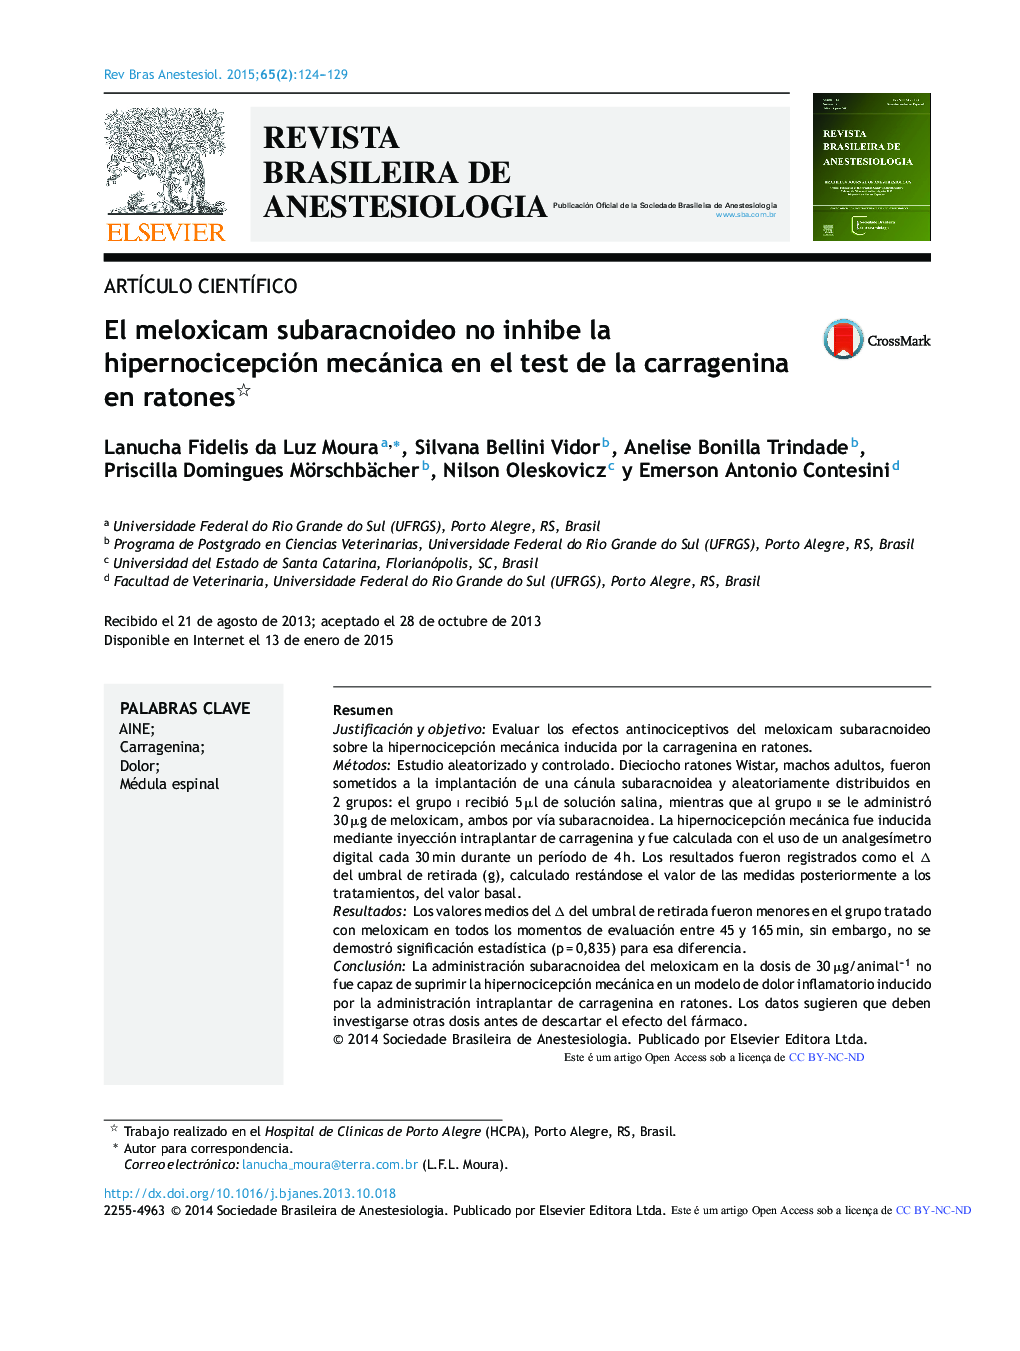 El meloxicam subaracnoideo no inhibe la hipernocicepción mecánica en el test de la carragenina en ratones 